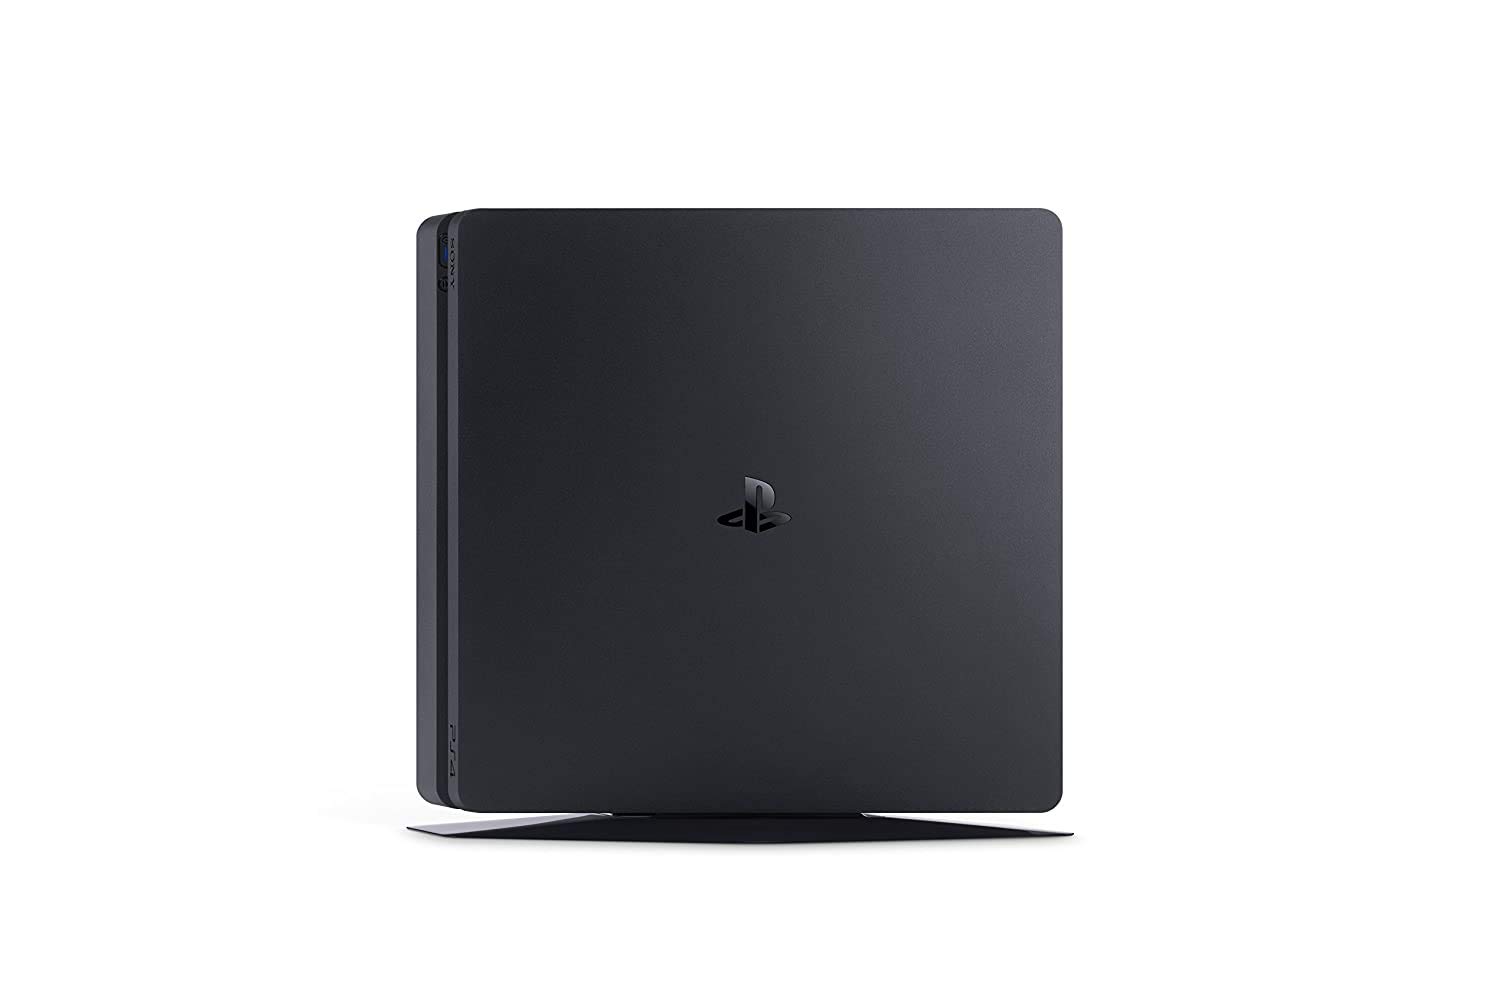 Playstation SONY 4, 500GB Slim System [CUH-2215AB01], Black, 3003347 (Renewed)